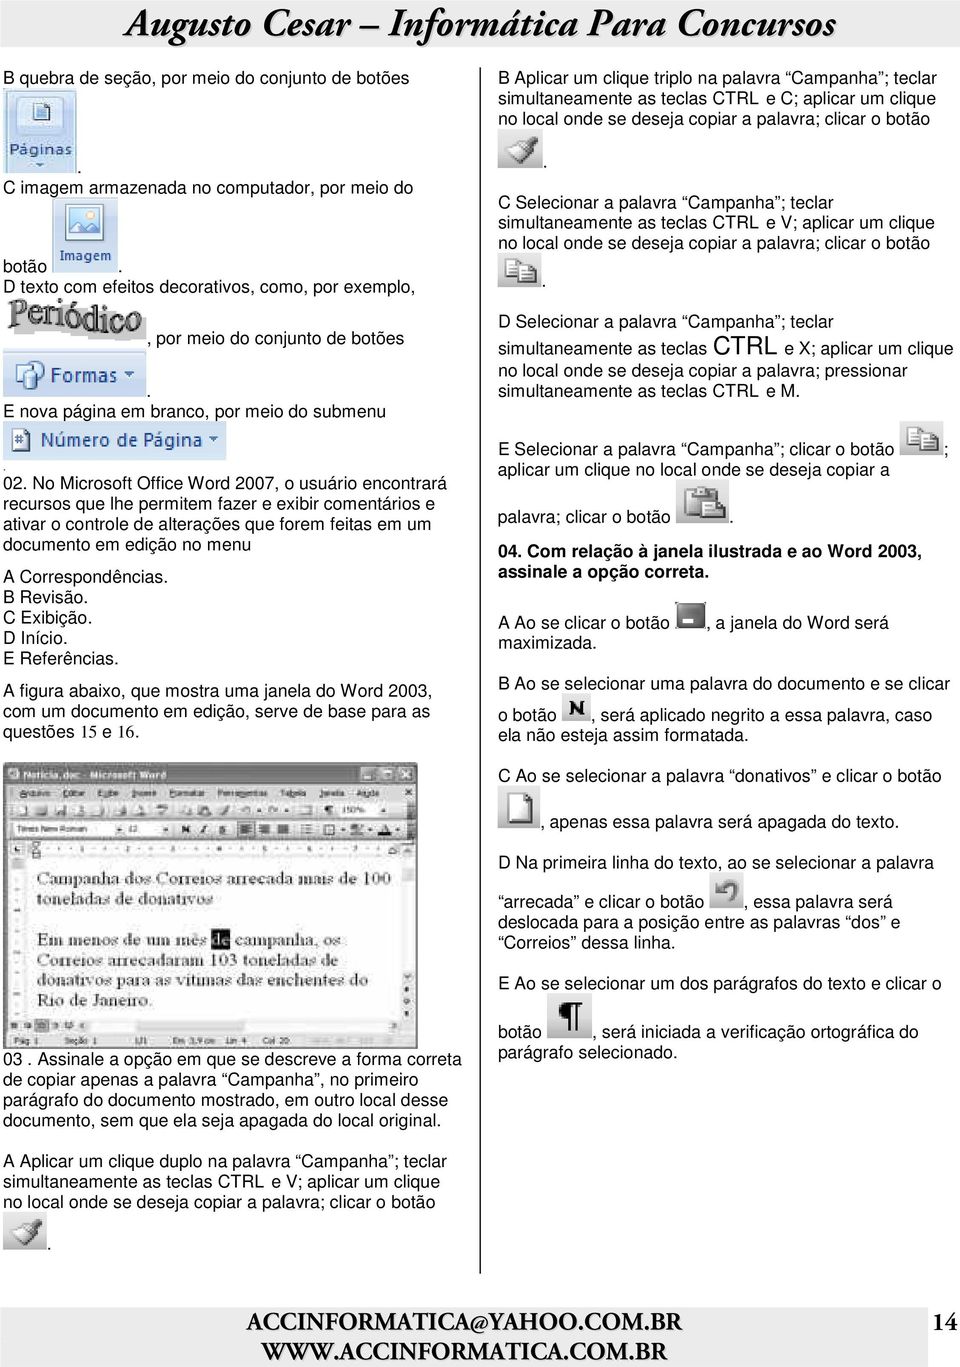 No Microsoft Office Word 2007, o usuário encontrará recursos que lhe permitem fazer e exibir comentários e ativar o controle de alterações que forem feitas em um documento em edição no menu A